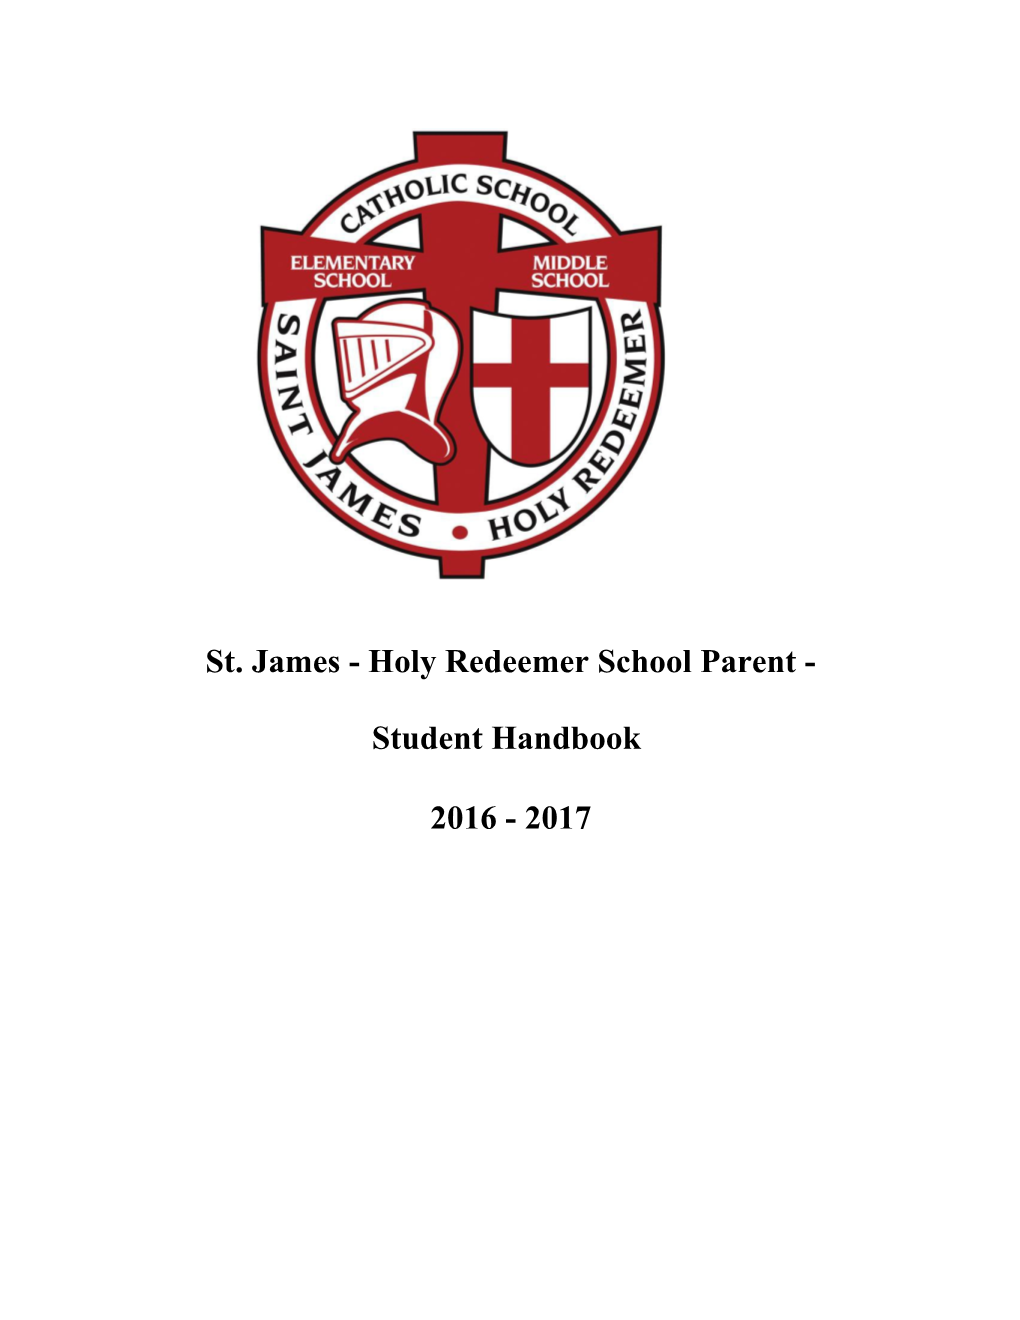 St. James - Holy Redeemer School Parent - Student Handbook